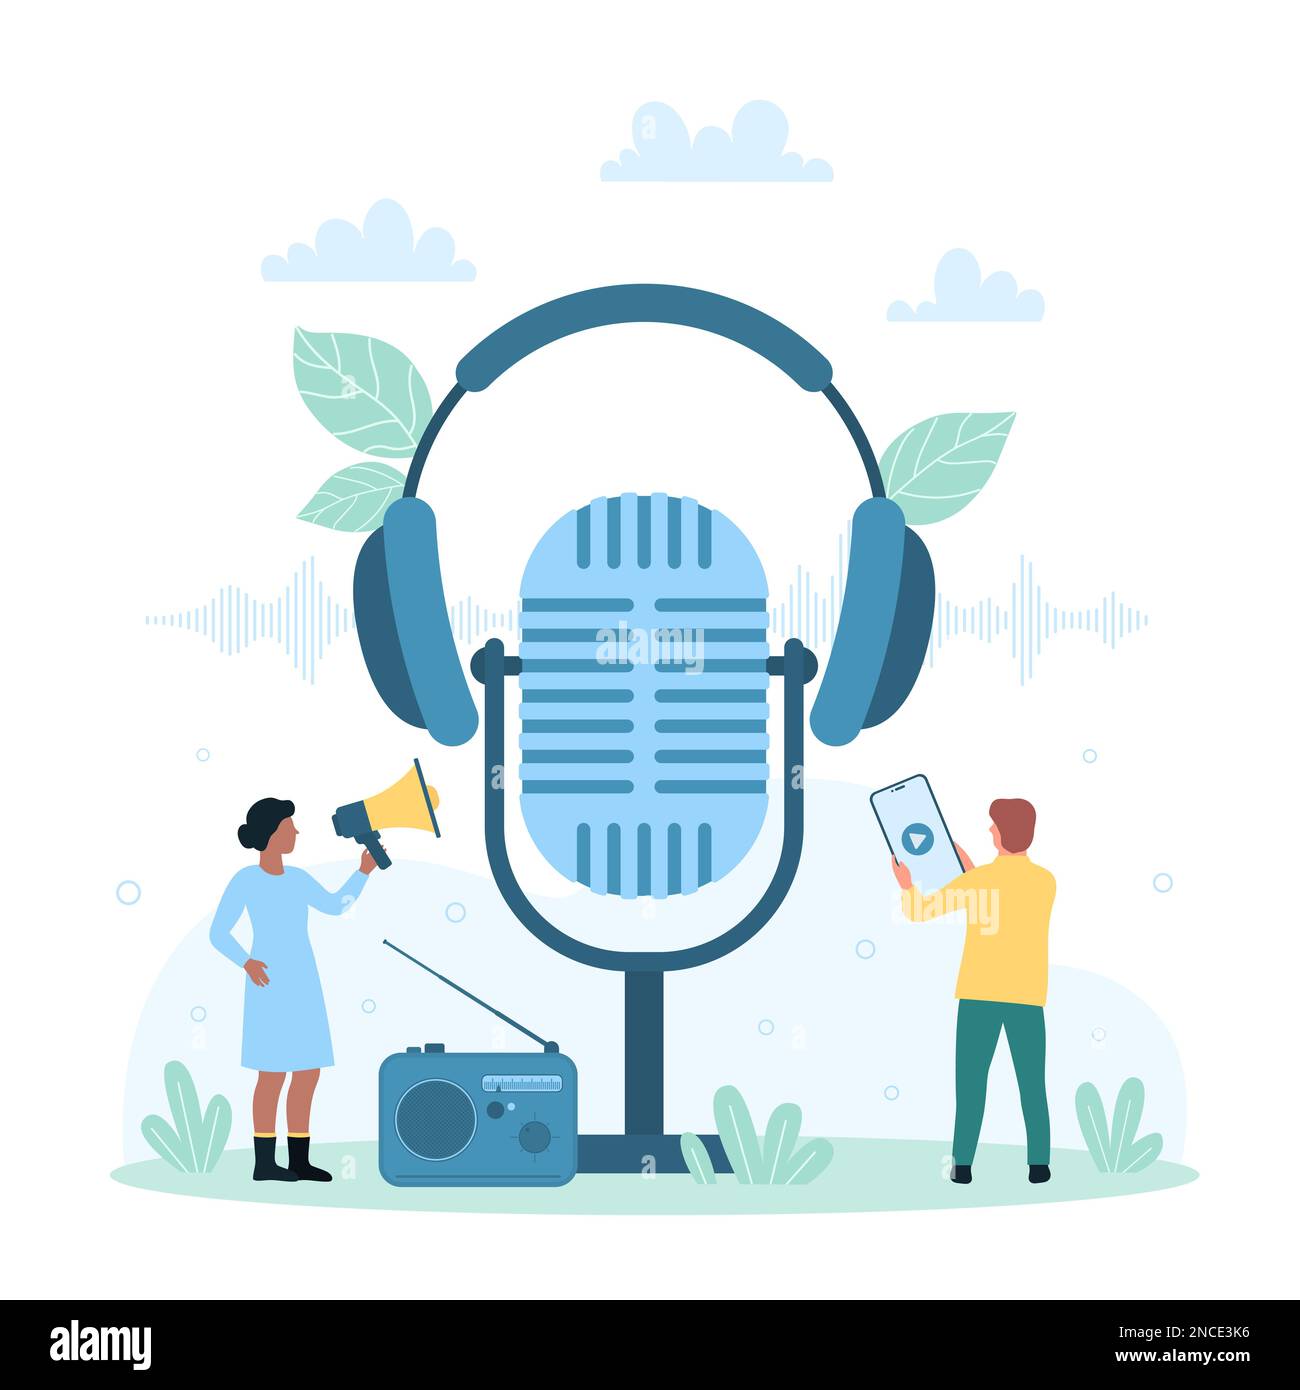 Illustrazione del vettore podcast audio. Cartoni animati da persone piccole  che utilizzano l'app mobile nel telefono e nel megafono, microfono e  cuffie, ricevitore radio per ascoltare e registrare interviste vocali o  musica